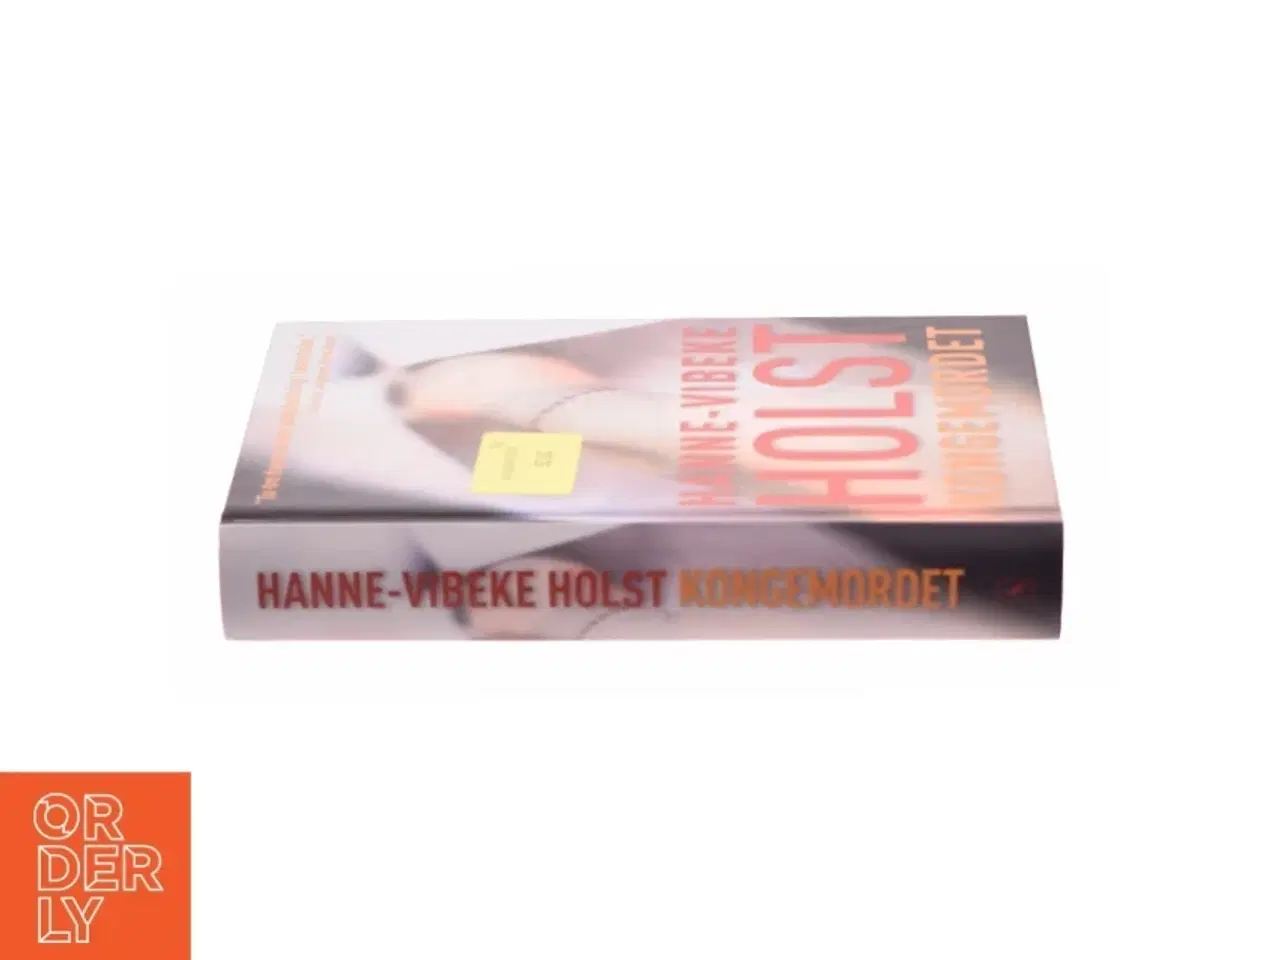 Billede 2 - Kongemordet : roman af Hanne-Vibeke Holst (Bog)